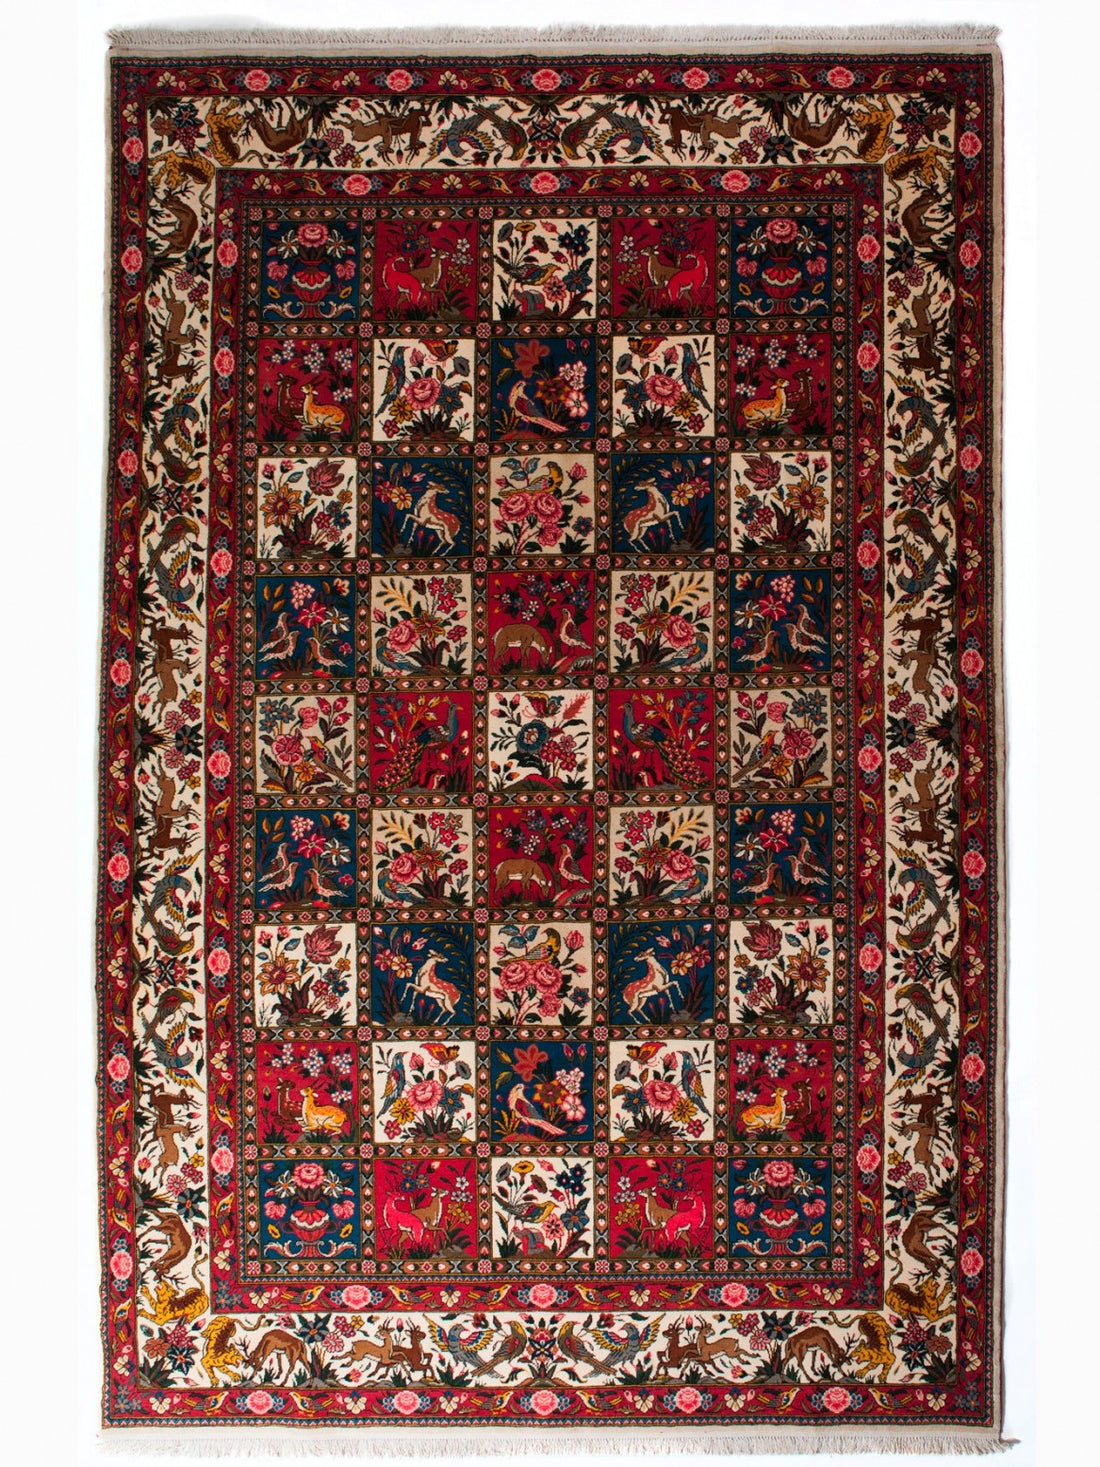 Origen y particularidades de las alfombras persas Bakhtiar